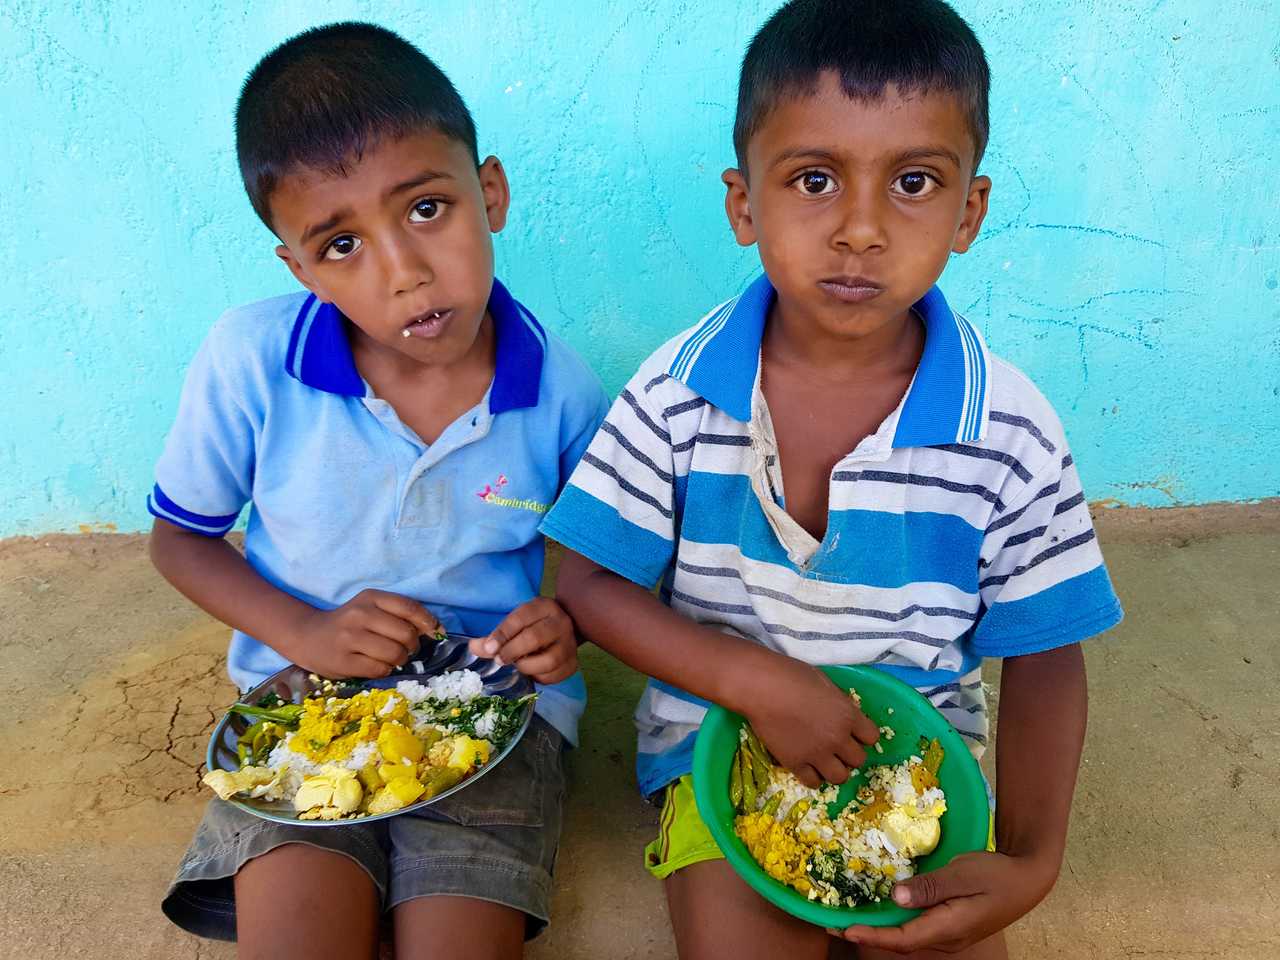 Enfants sri lankais assis et mangeant, Sri Lanka